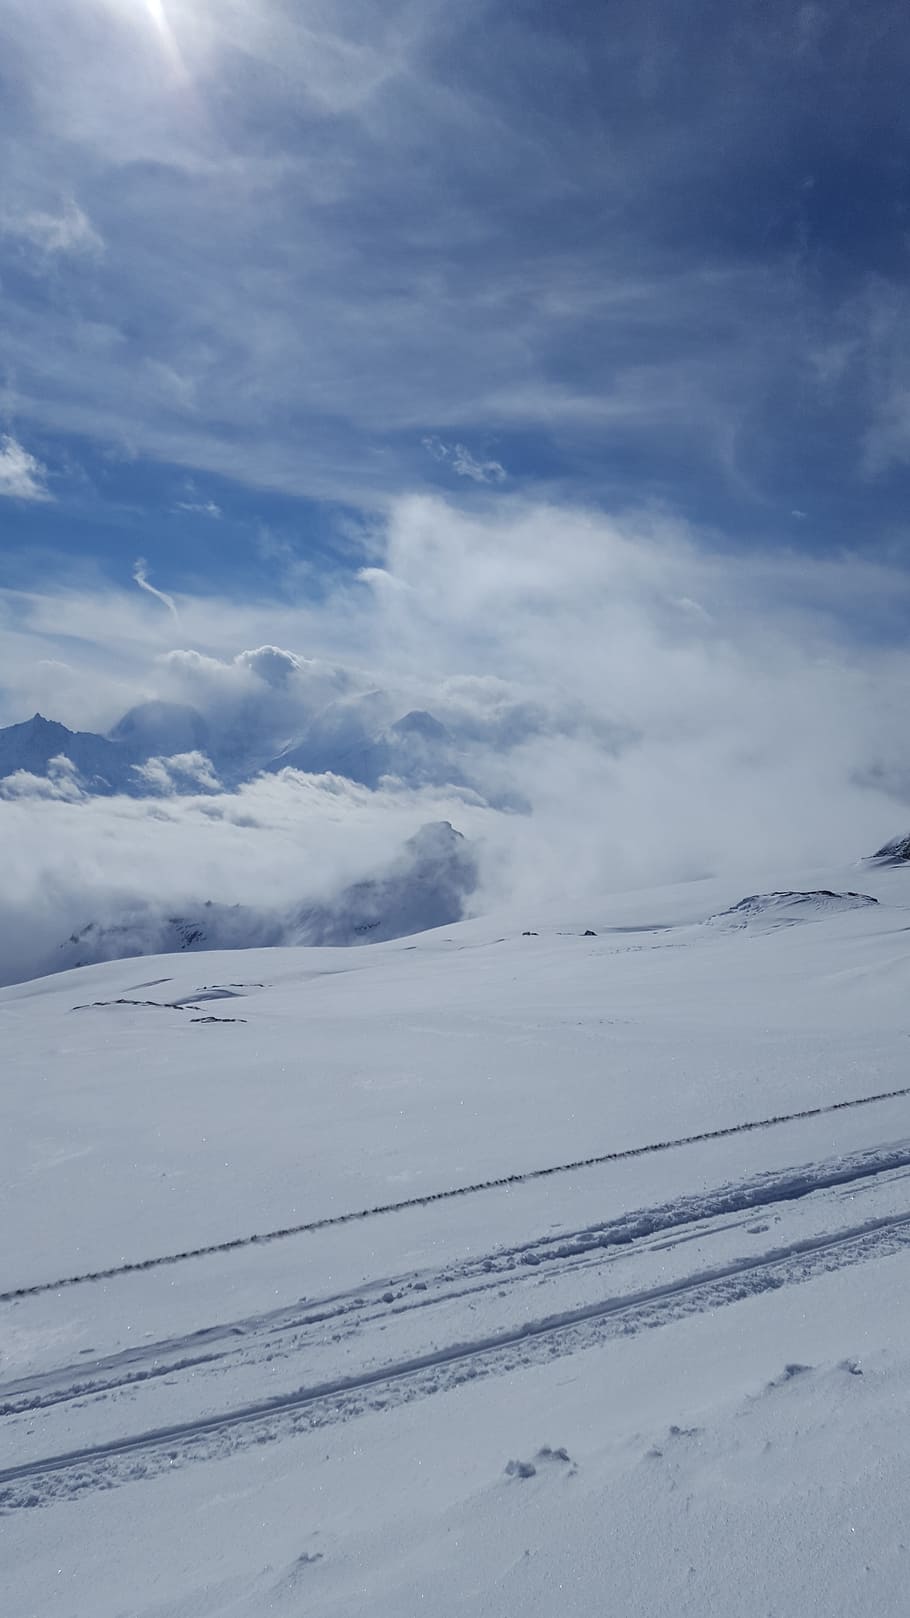 Snow, Ski, Winter, Mountain, Skier, Cold, alps, sky, white, alpine